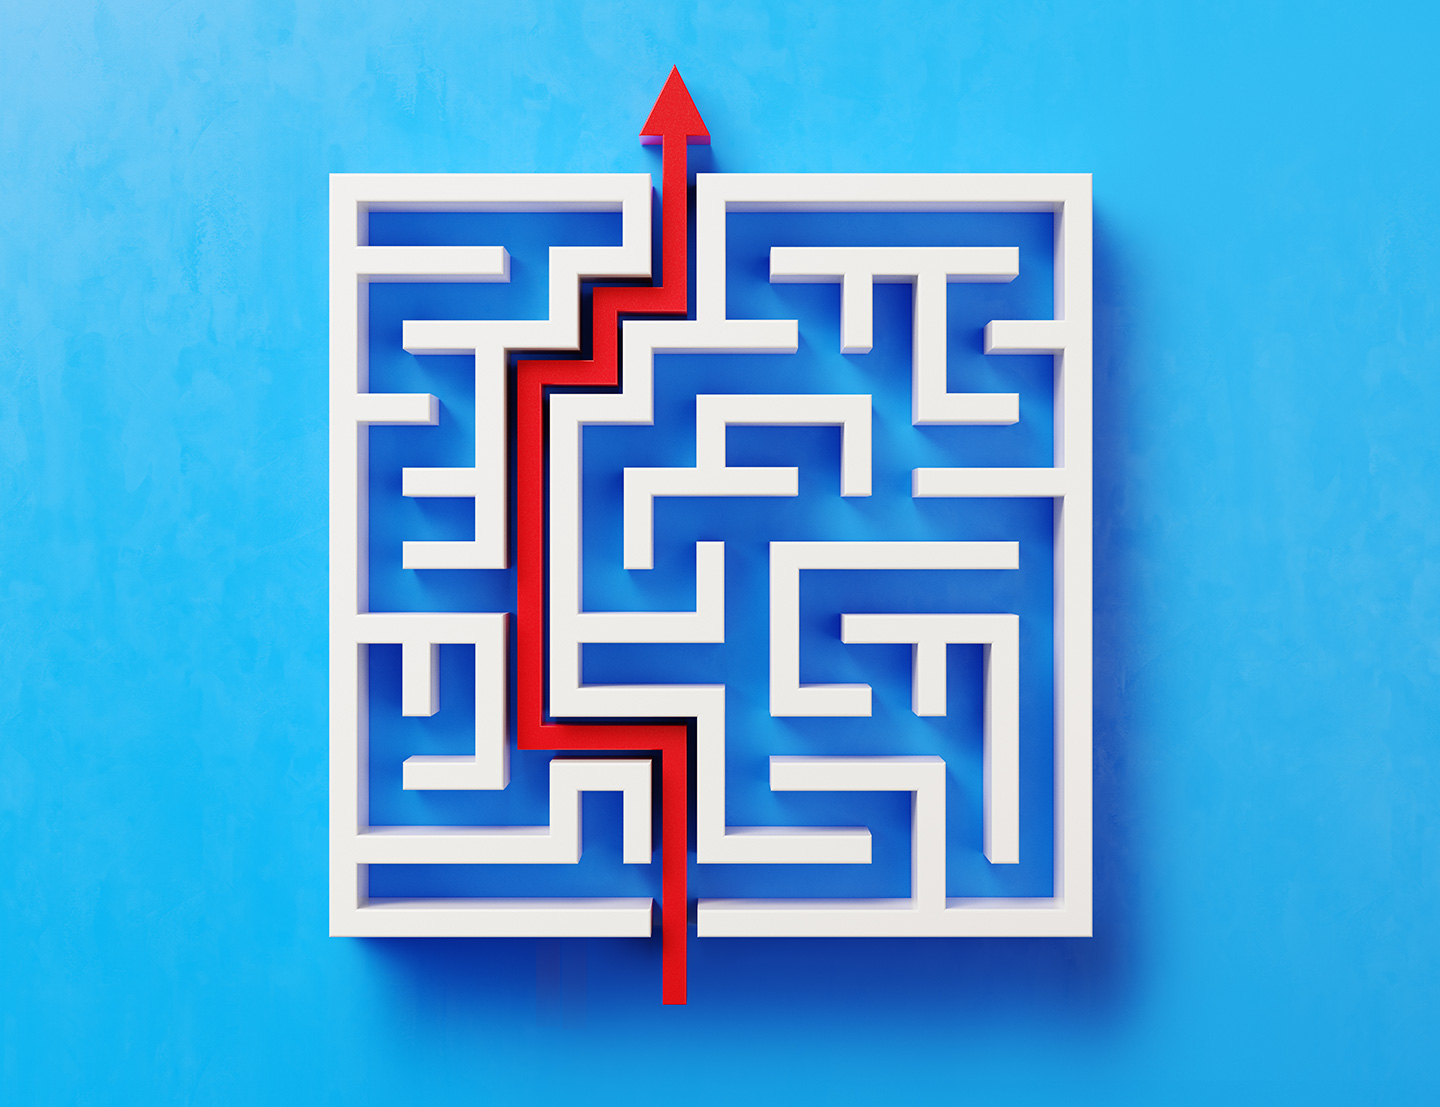 A red arrow navigating it's way through a maze